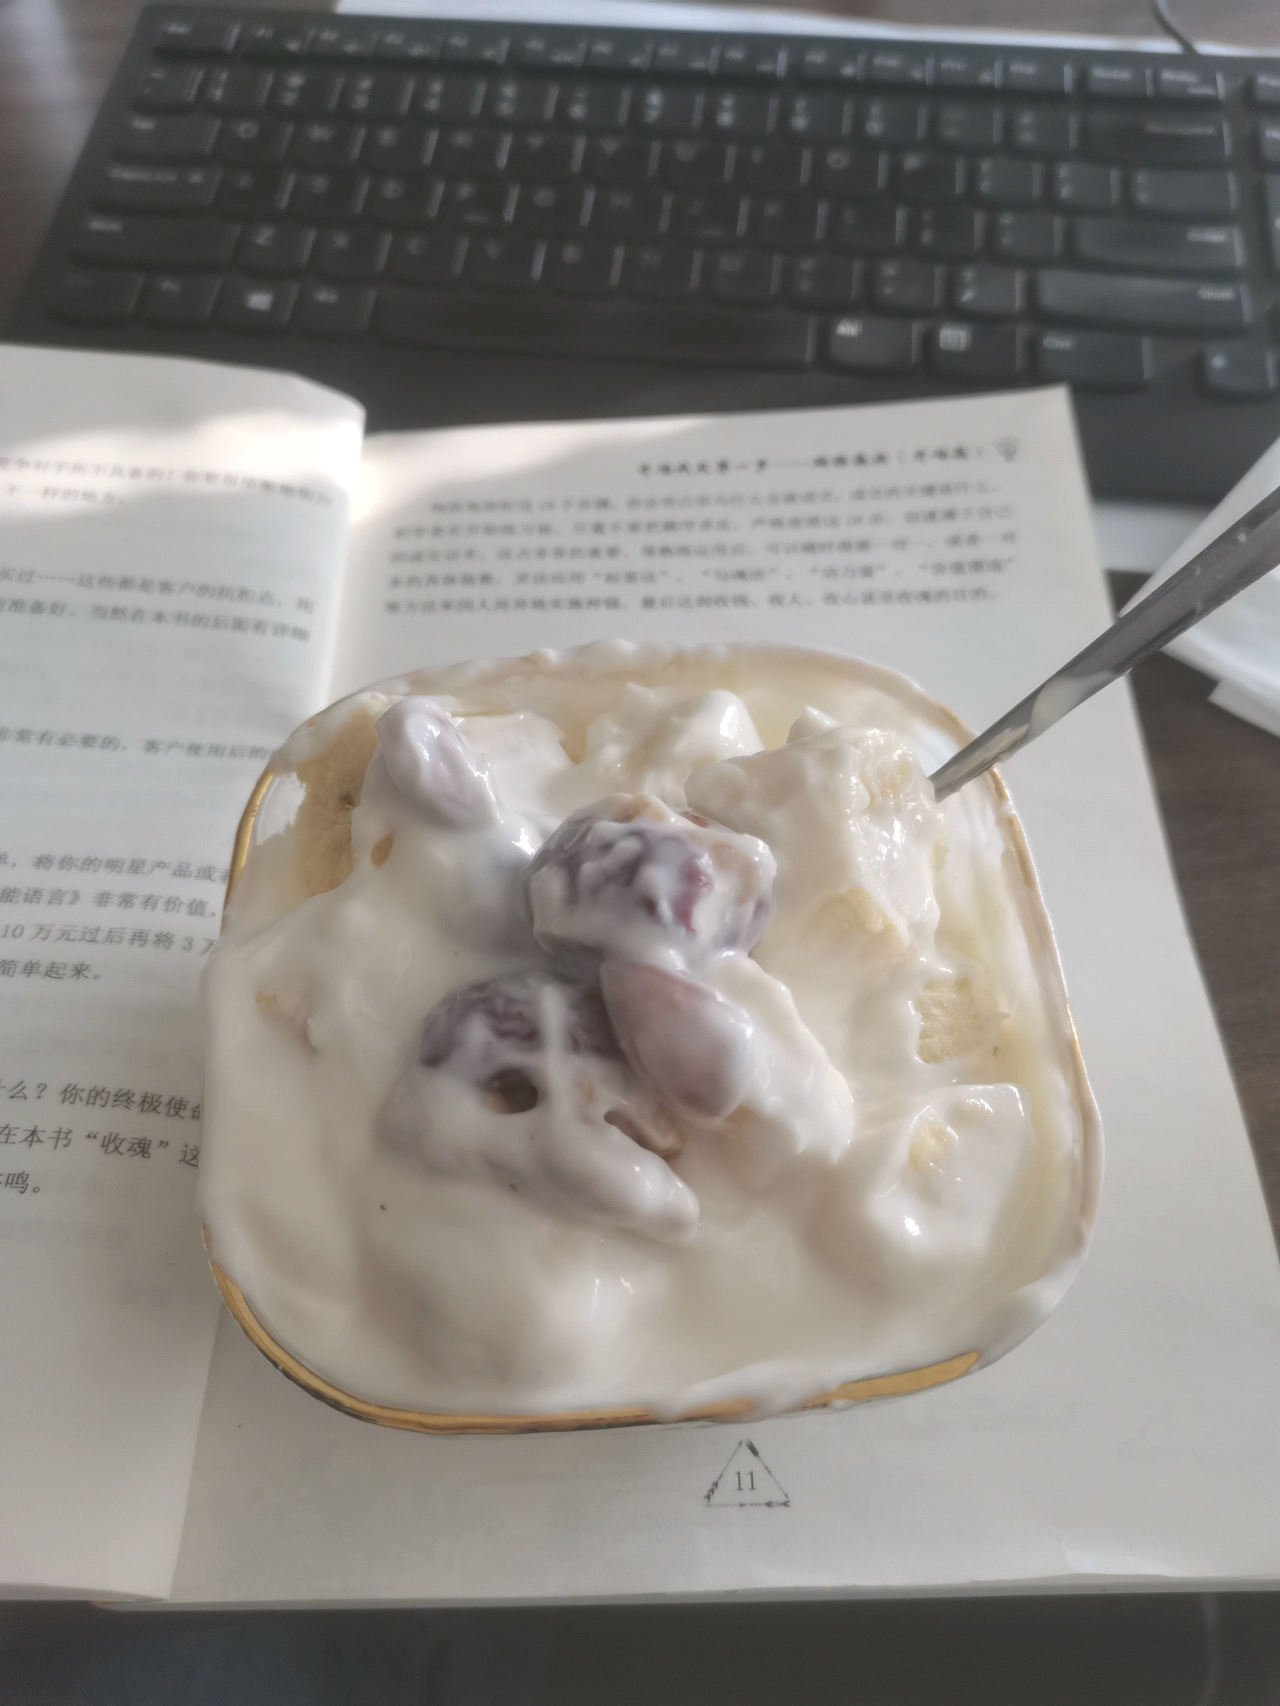 简单粗暴的坚果酸奶